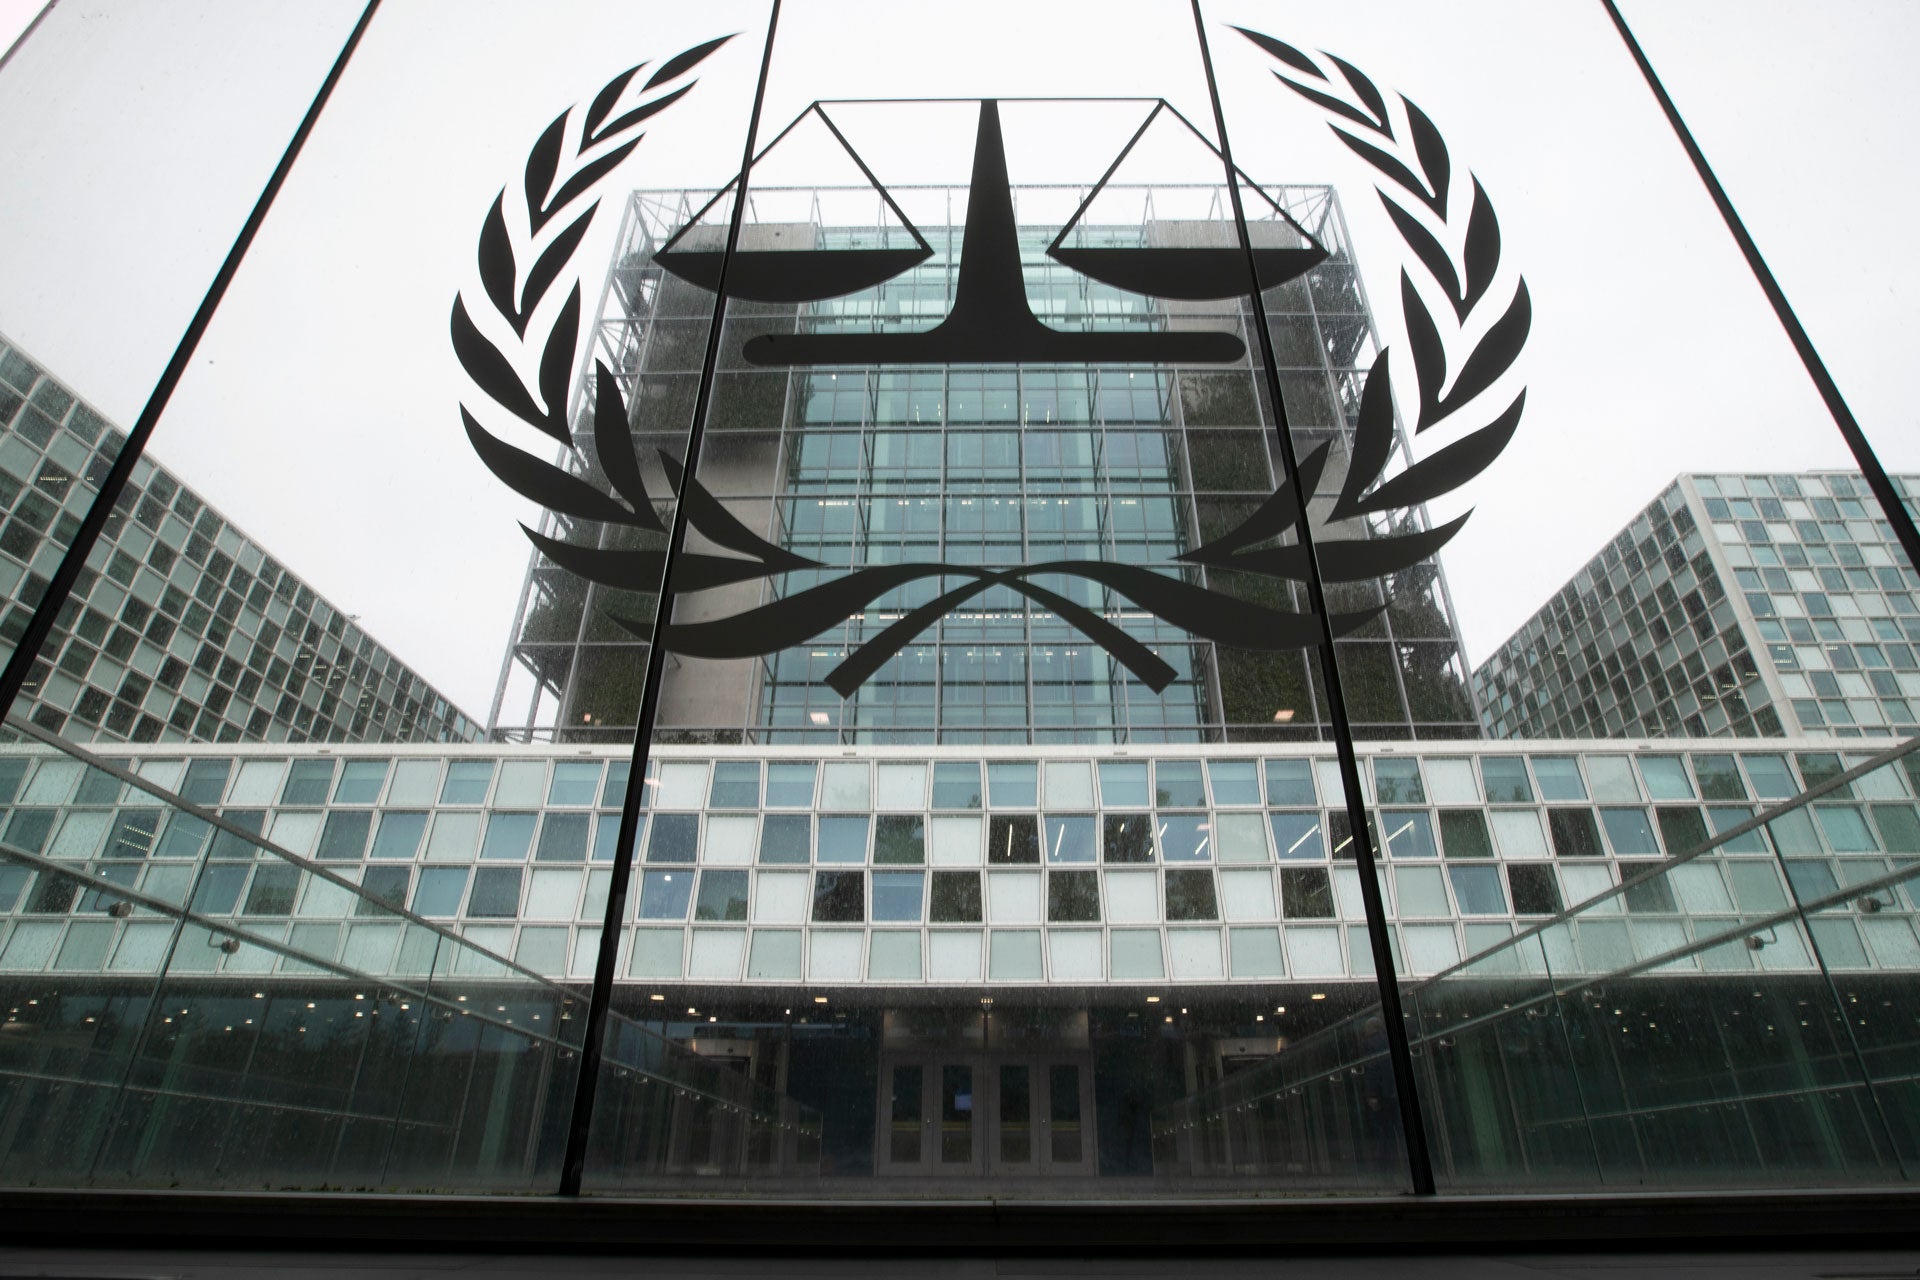 Le siège de la Cour pénale internationale (CPI) à La Haye, aux Pays-Bas, photographié en novembre 2019.